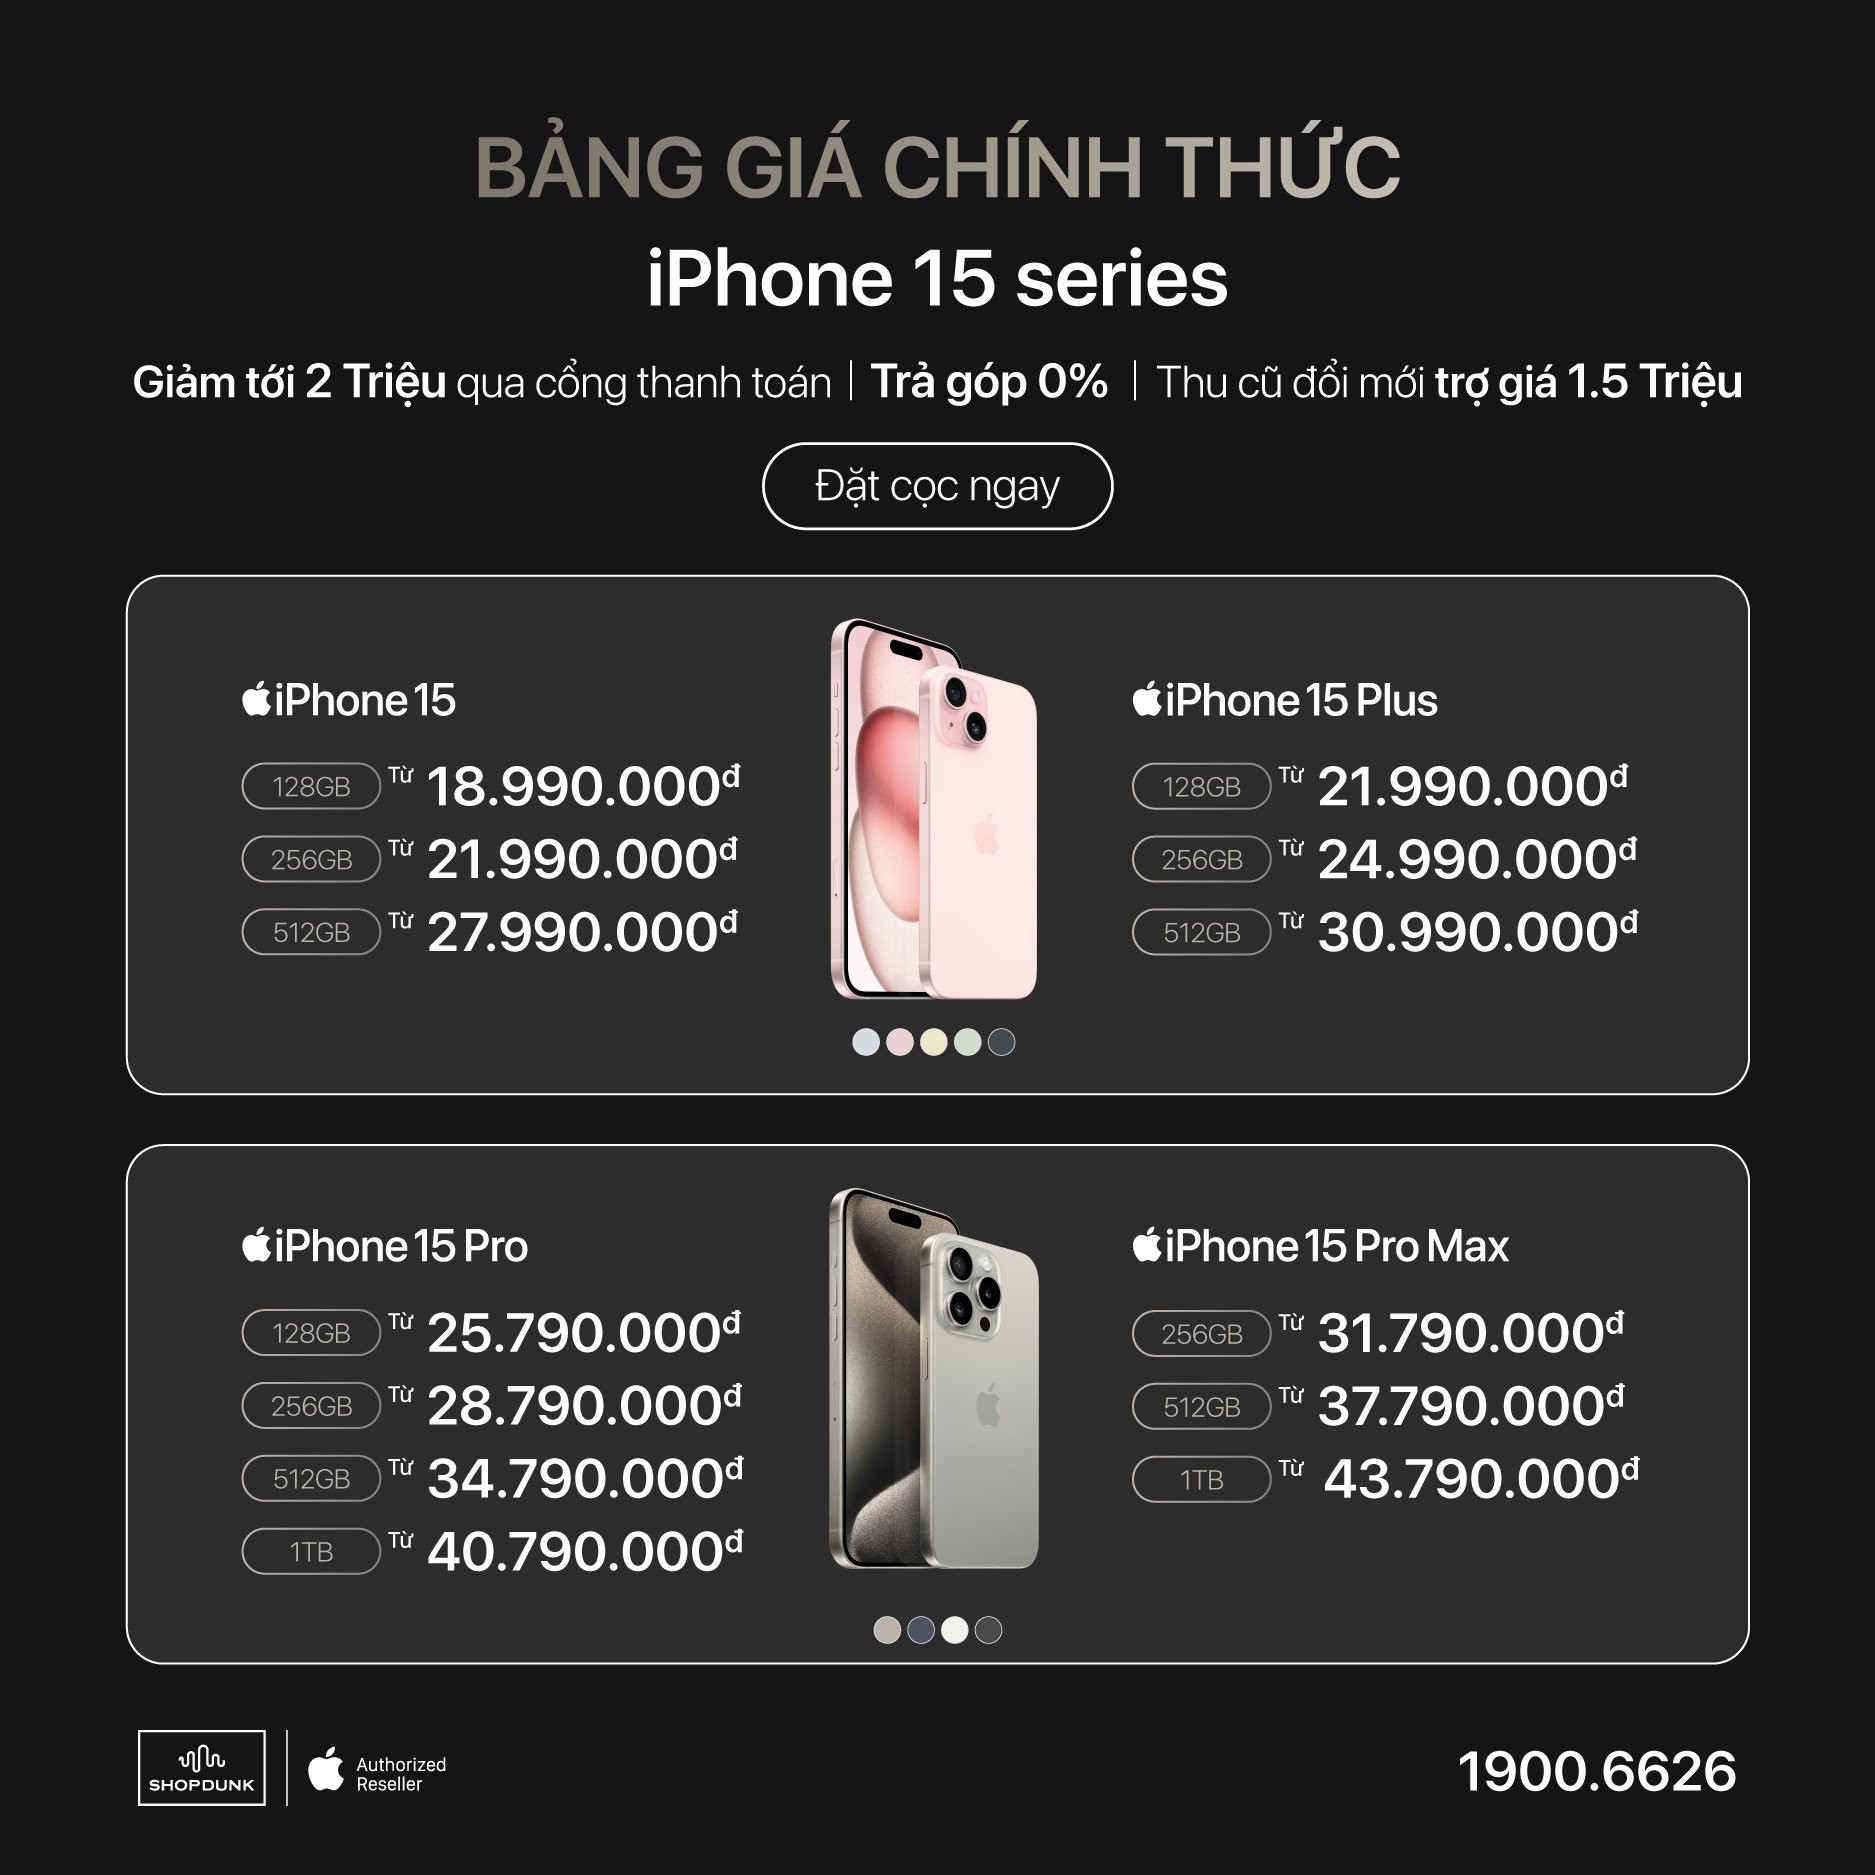 iPhone 15 series chính thức mở đặt trước, các hệ thống bán lẻ tại Việt Nam lại lao vào 'cuộc chiến giá rẻ' - Ảnh 8.